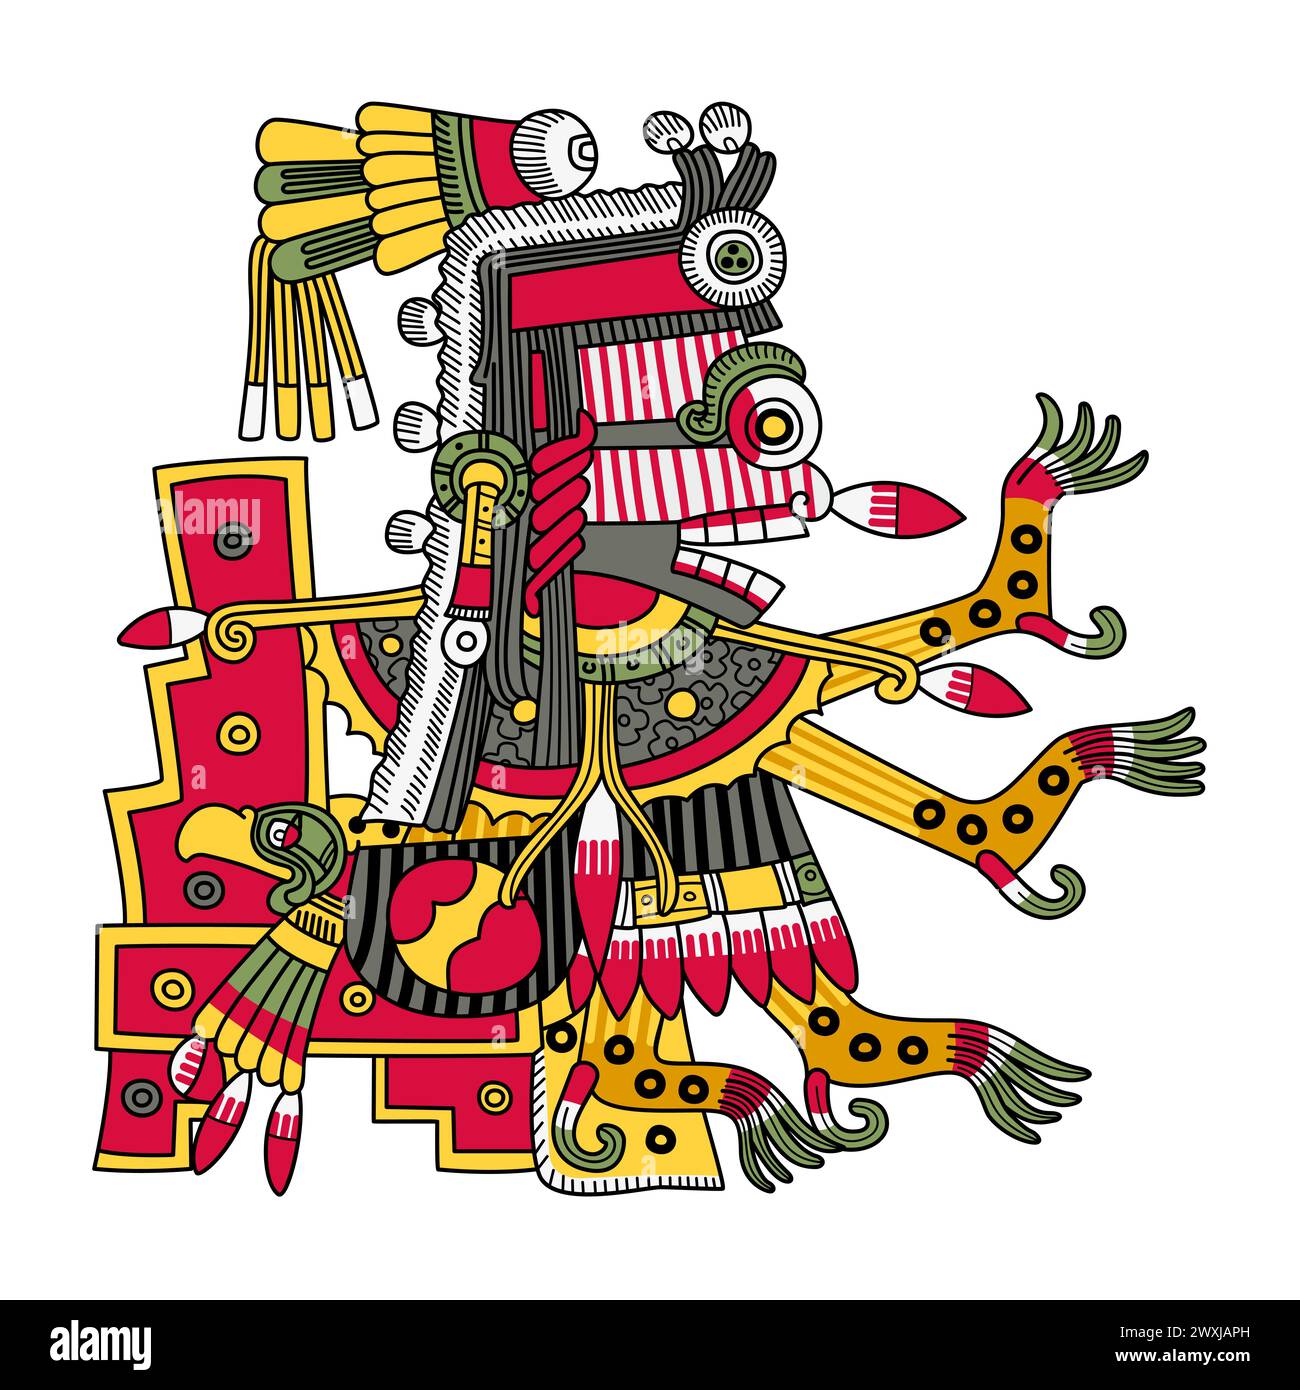 Itzpapalotl, déesse aztèque de la mort, guerrière squelettique frappante, reine des Tzitzimimeh, les démons étoilés, qui peuvent dévorer les gens pendant les éclipses solaires. Banque D'Images